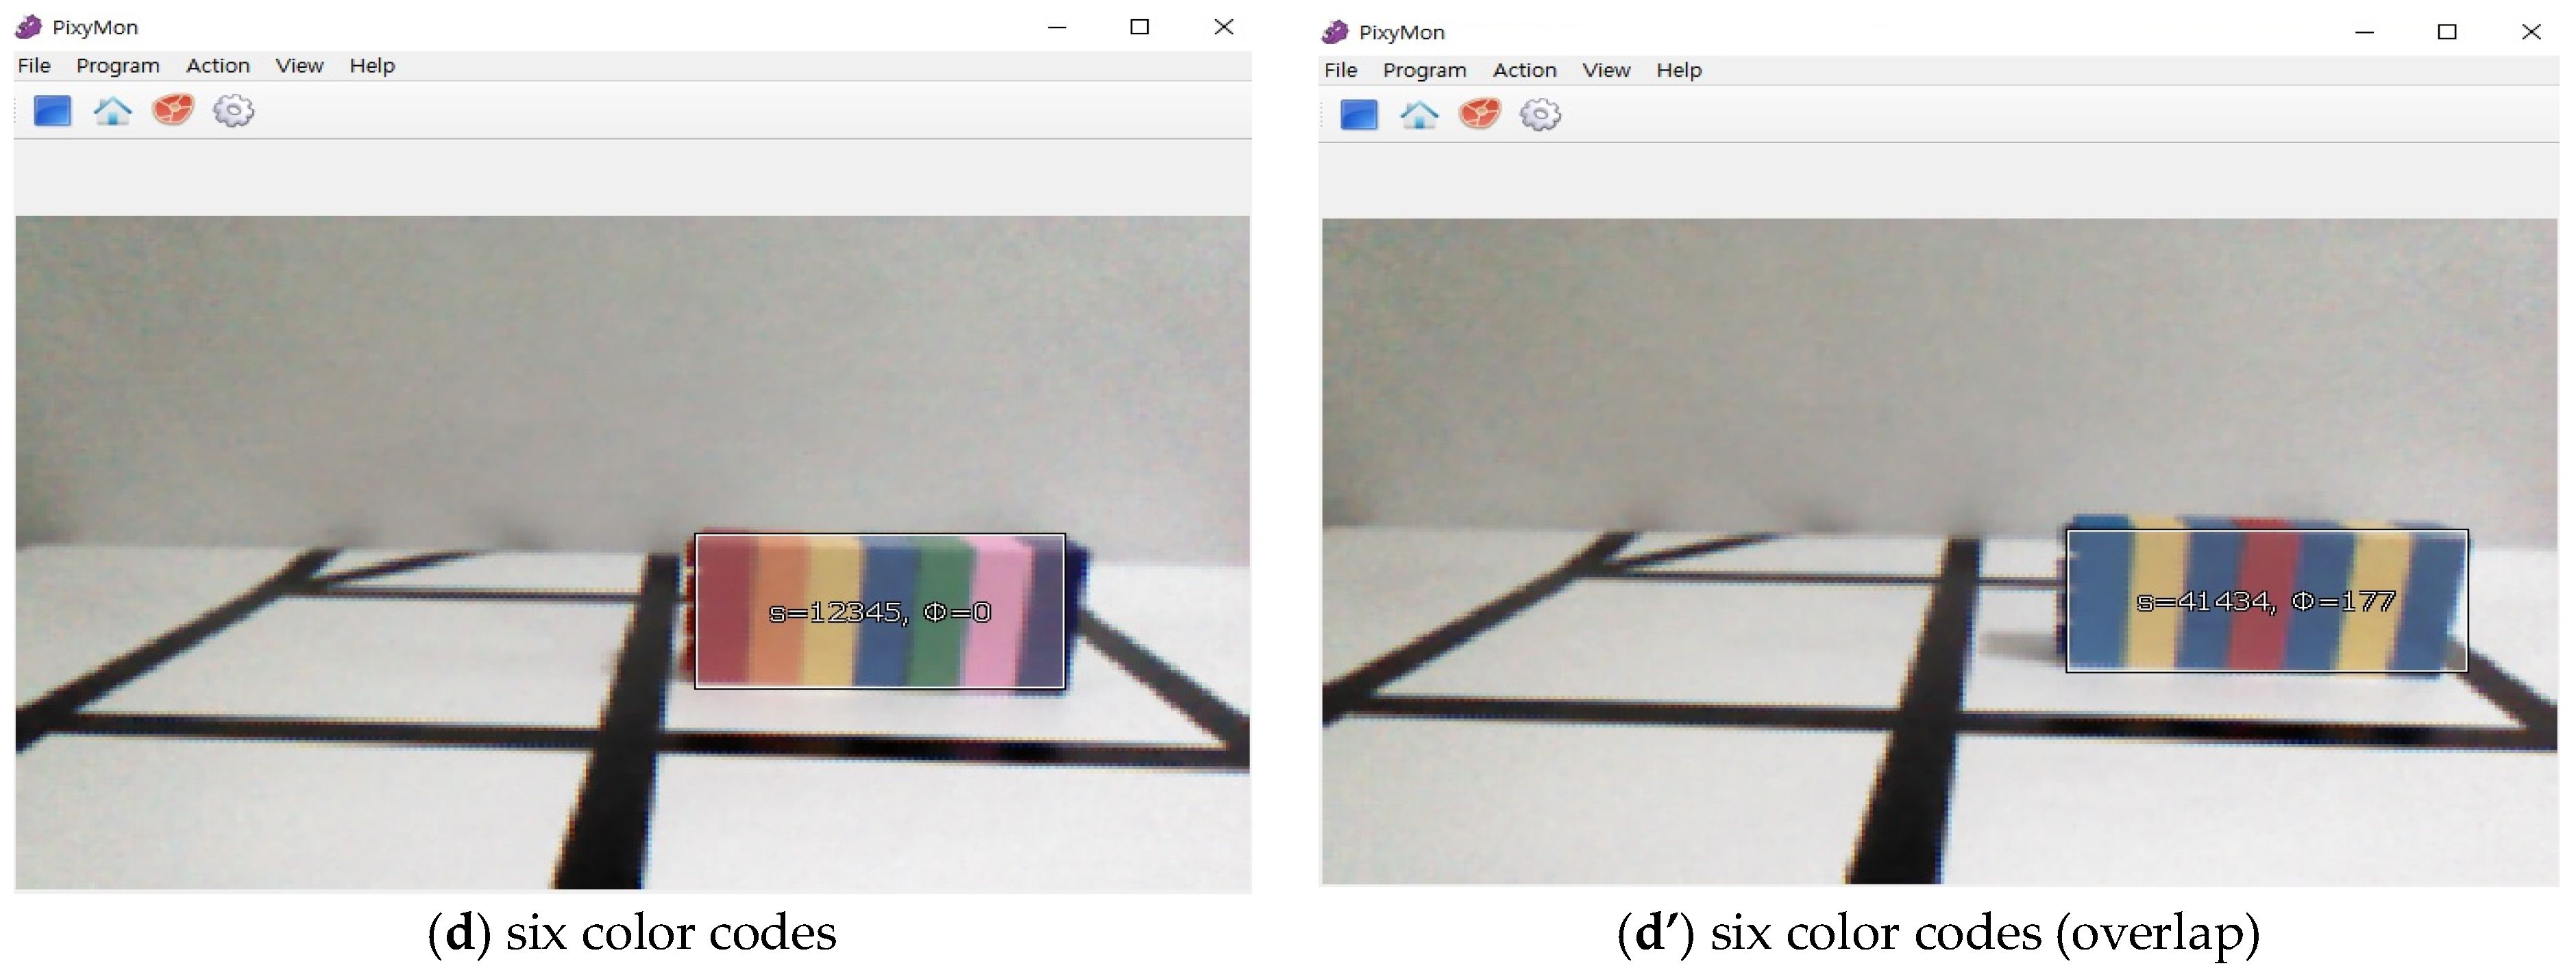 wiki:v2:using_color_codes [Documentation]